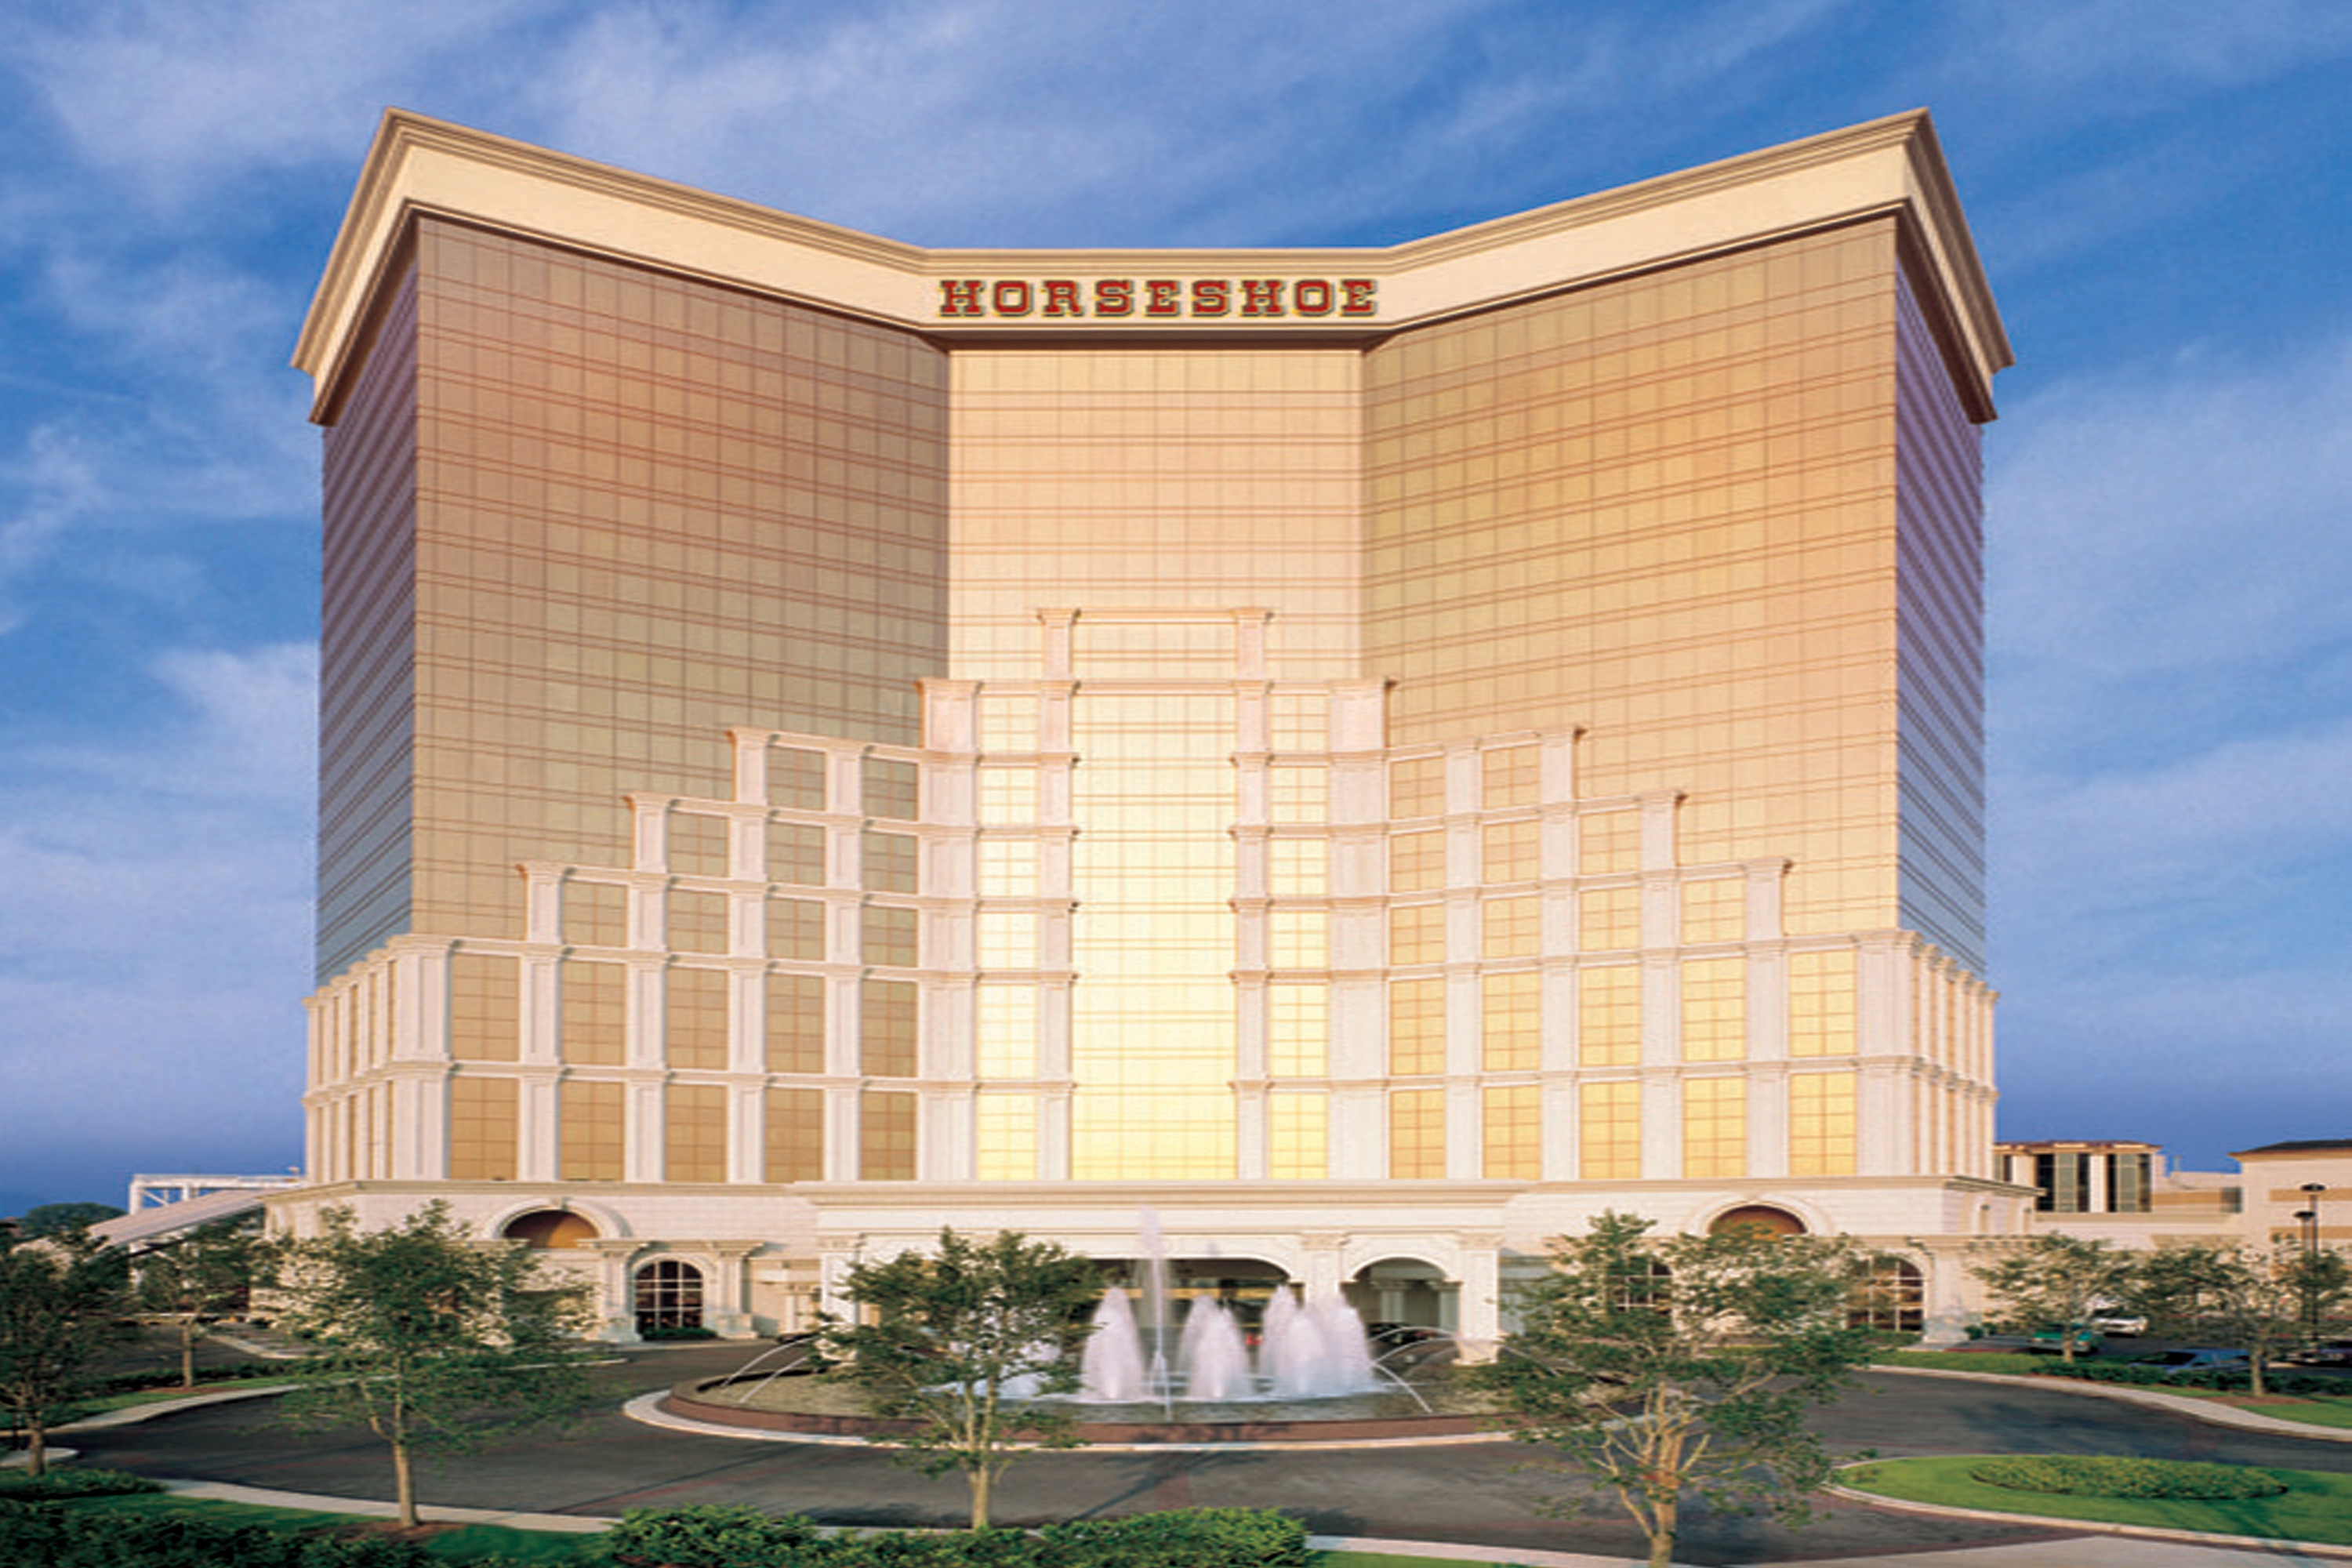 Horseshoe Bossier Casino & Hotel in Bossier City